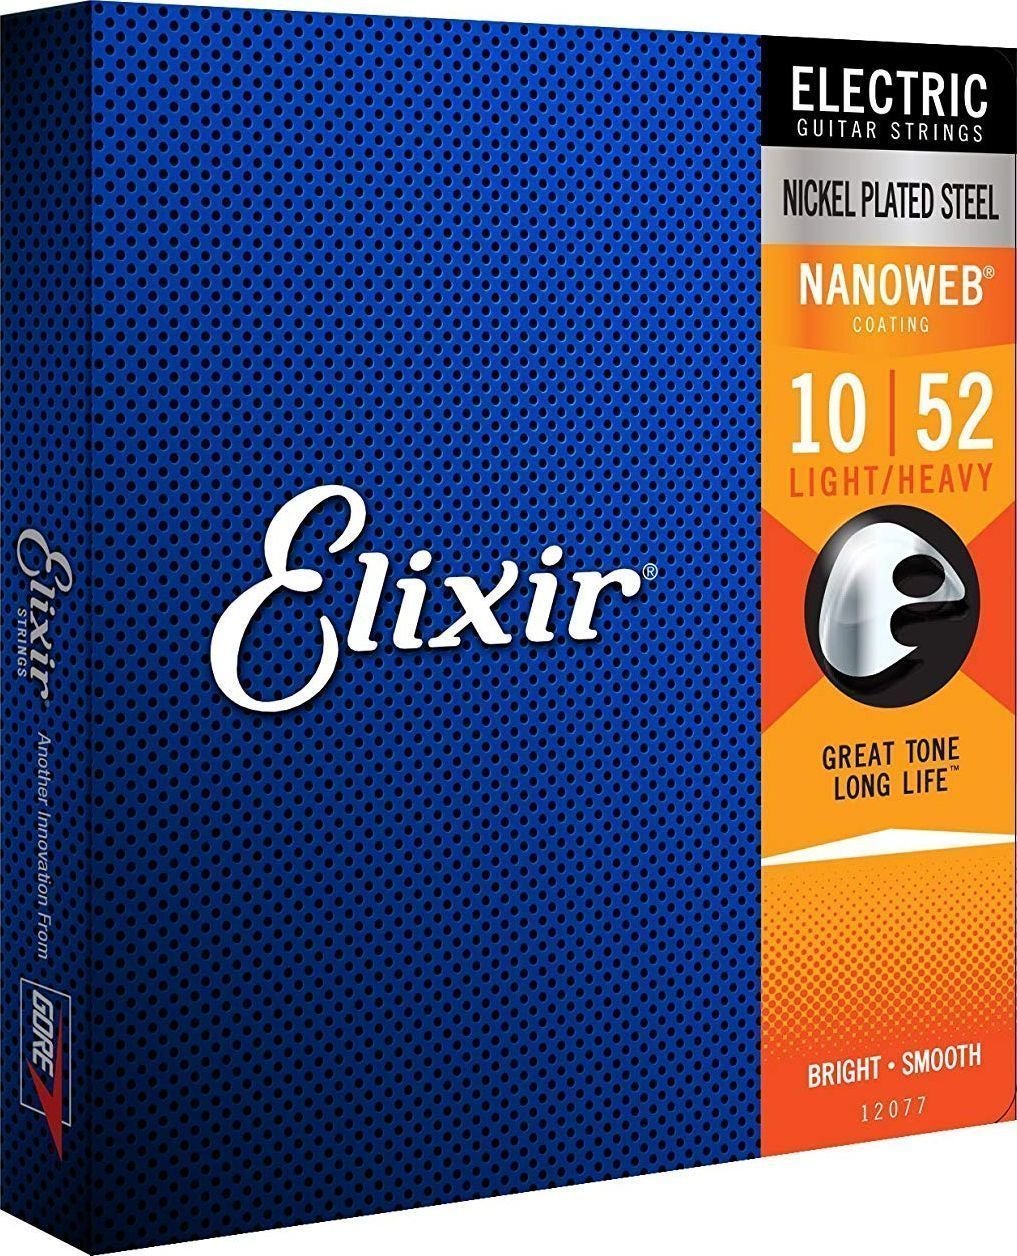 Struny pre elektrickú gitaru Elixir 12077 Nanoweb 10-52